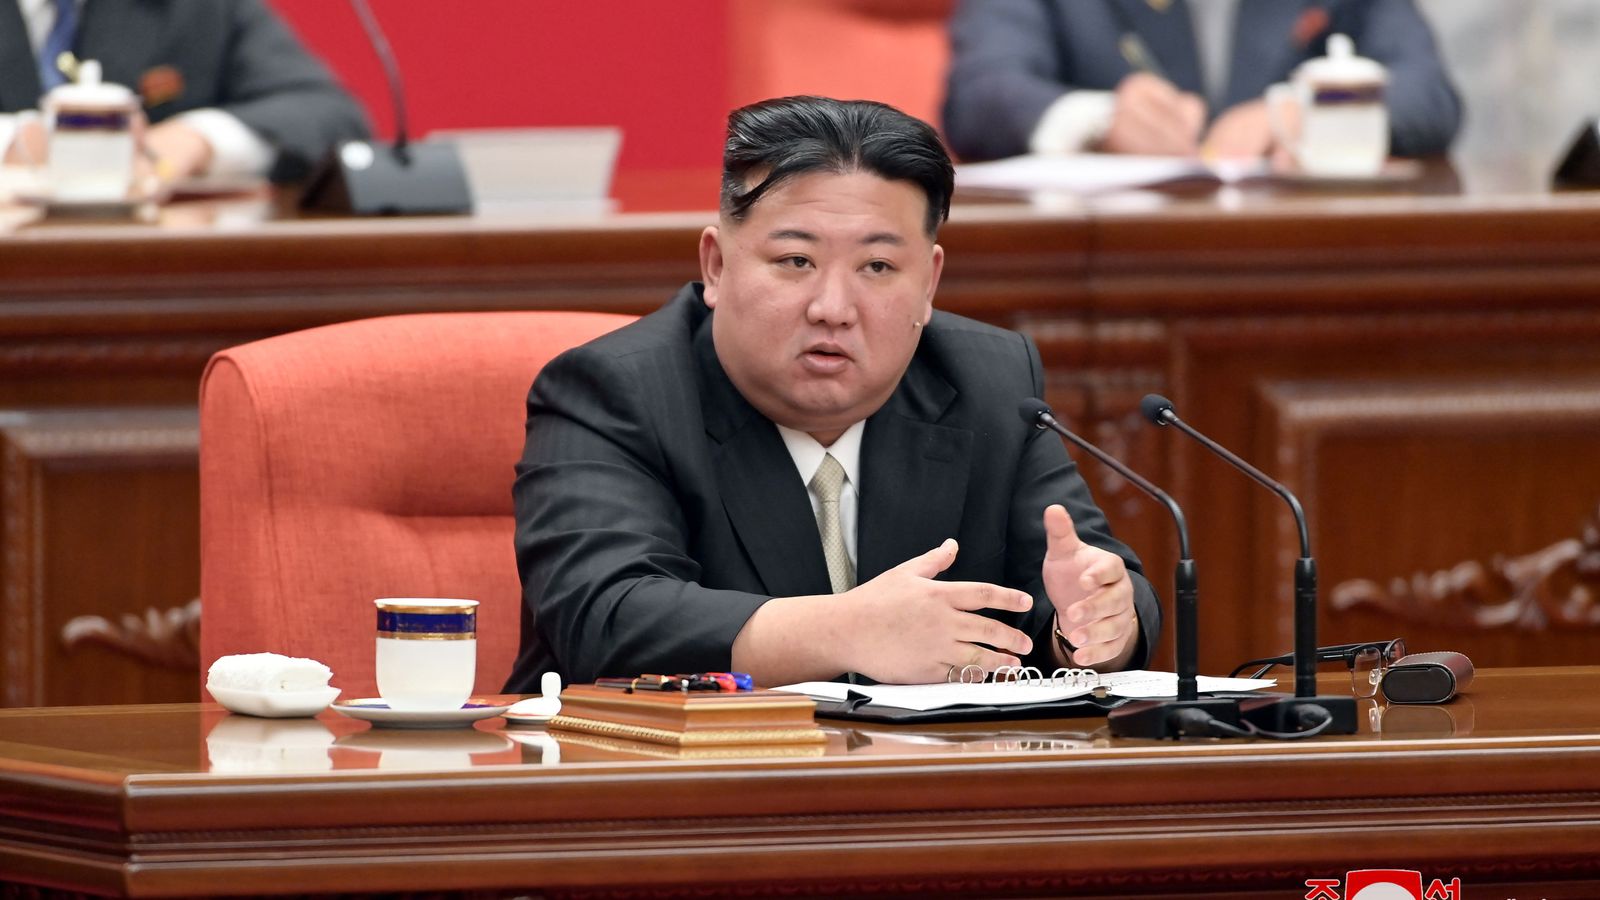 Ким Чен Ун казва, че Северна Корея трябва „напълно да унищожи“ САЩ и Южна Корея, ако бъдат провокирани